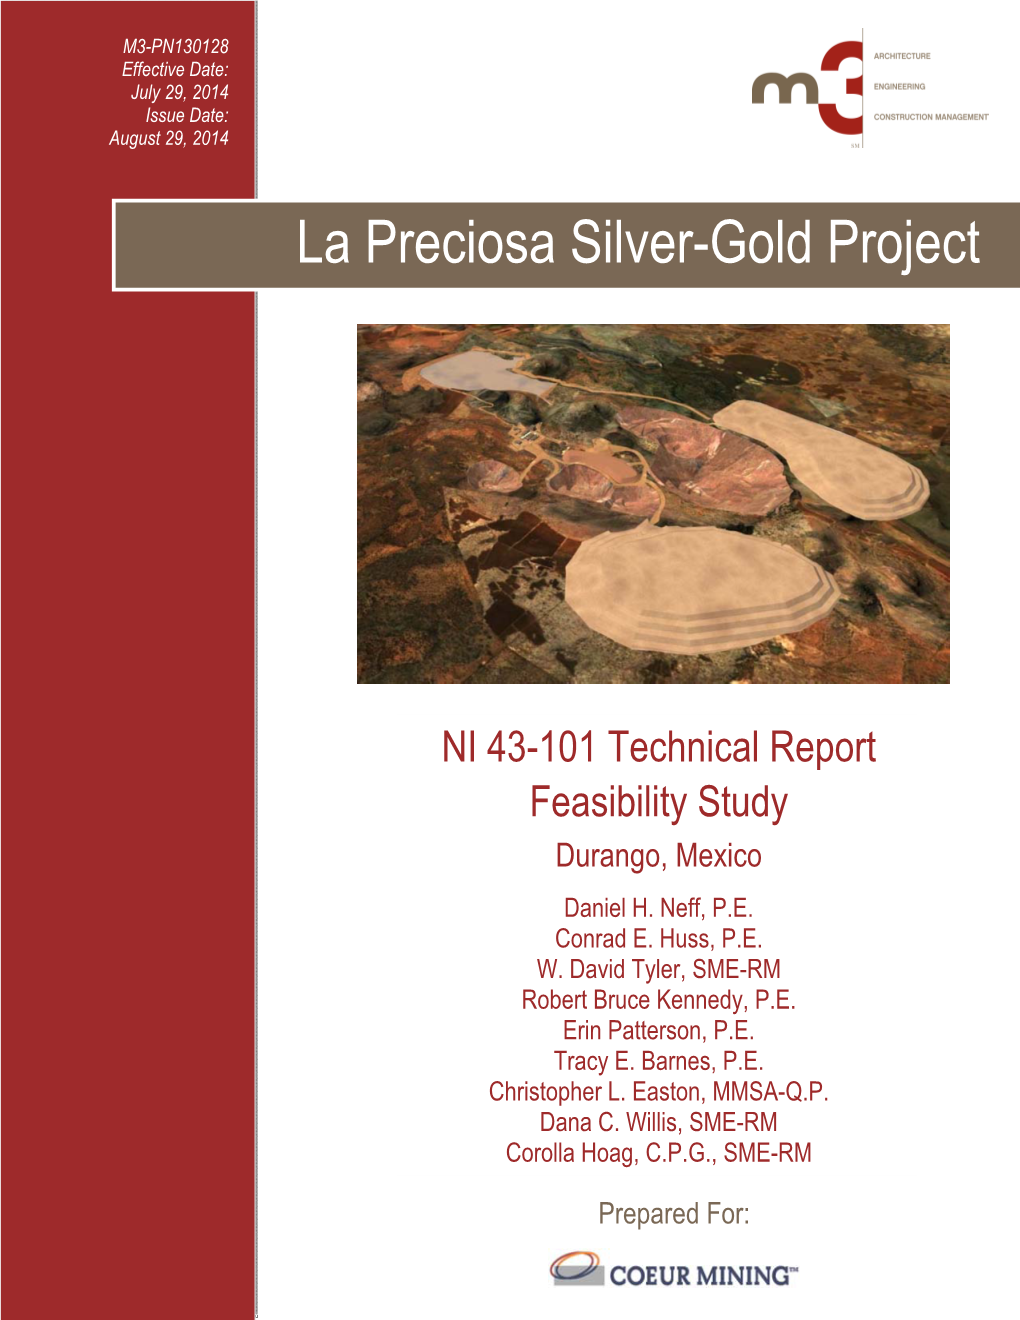 La Preciosa Silver-Gold Project